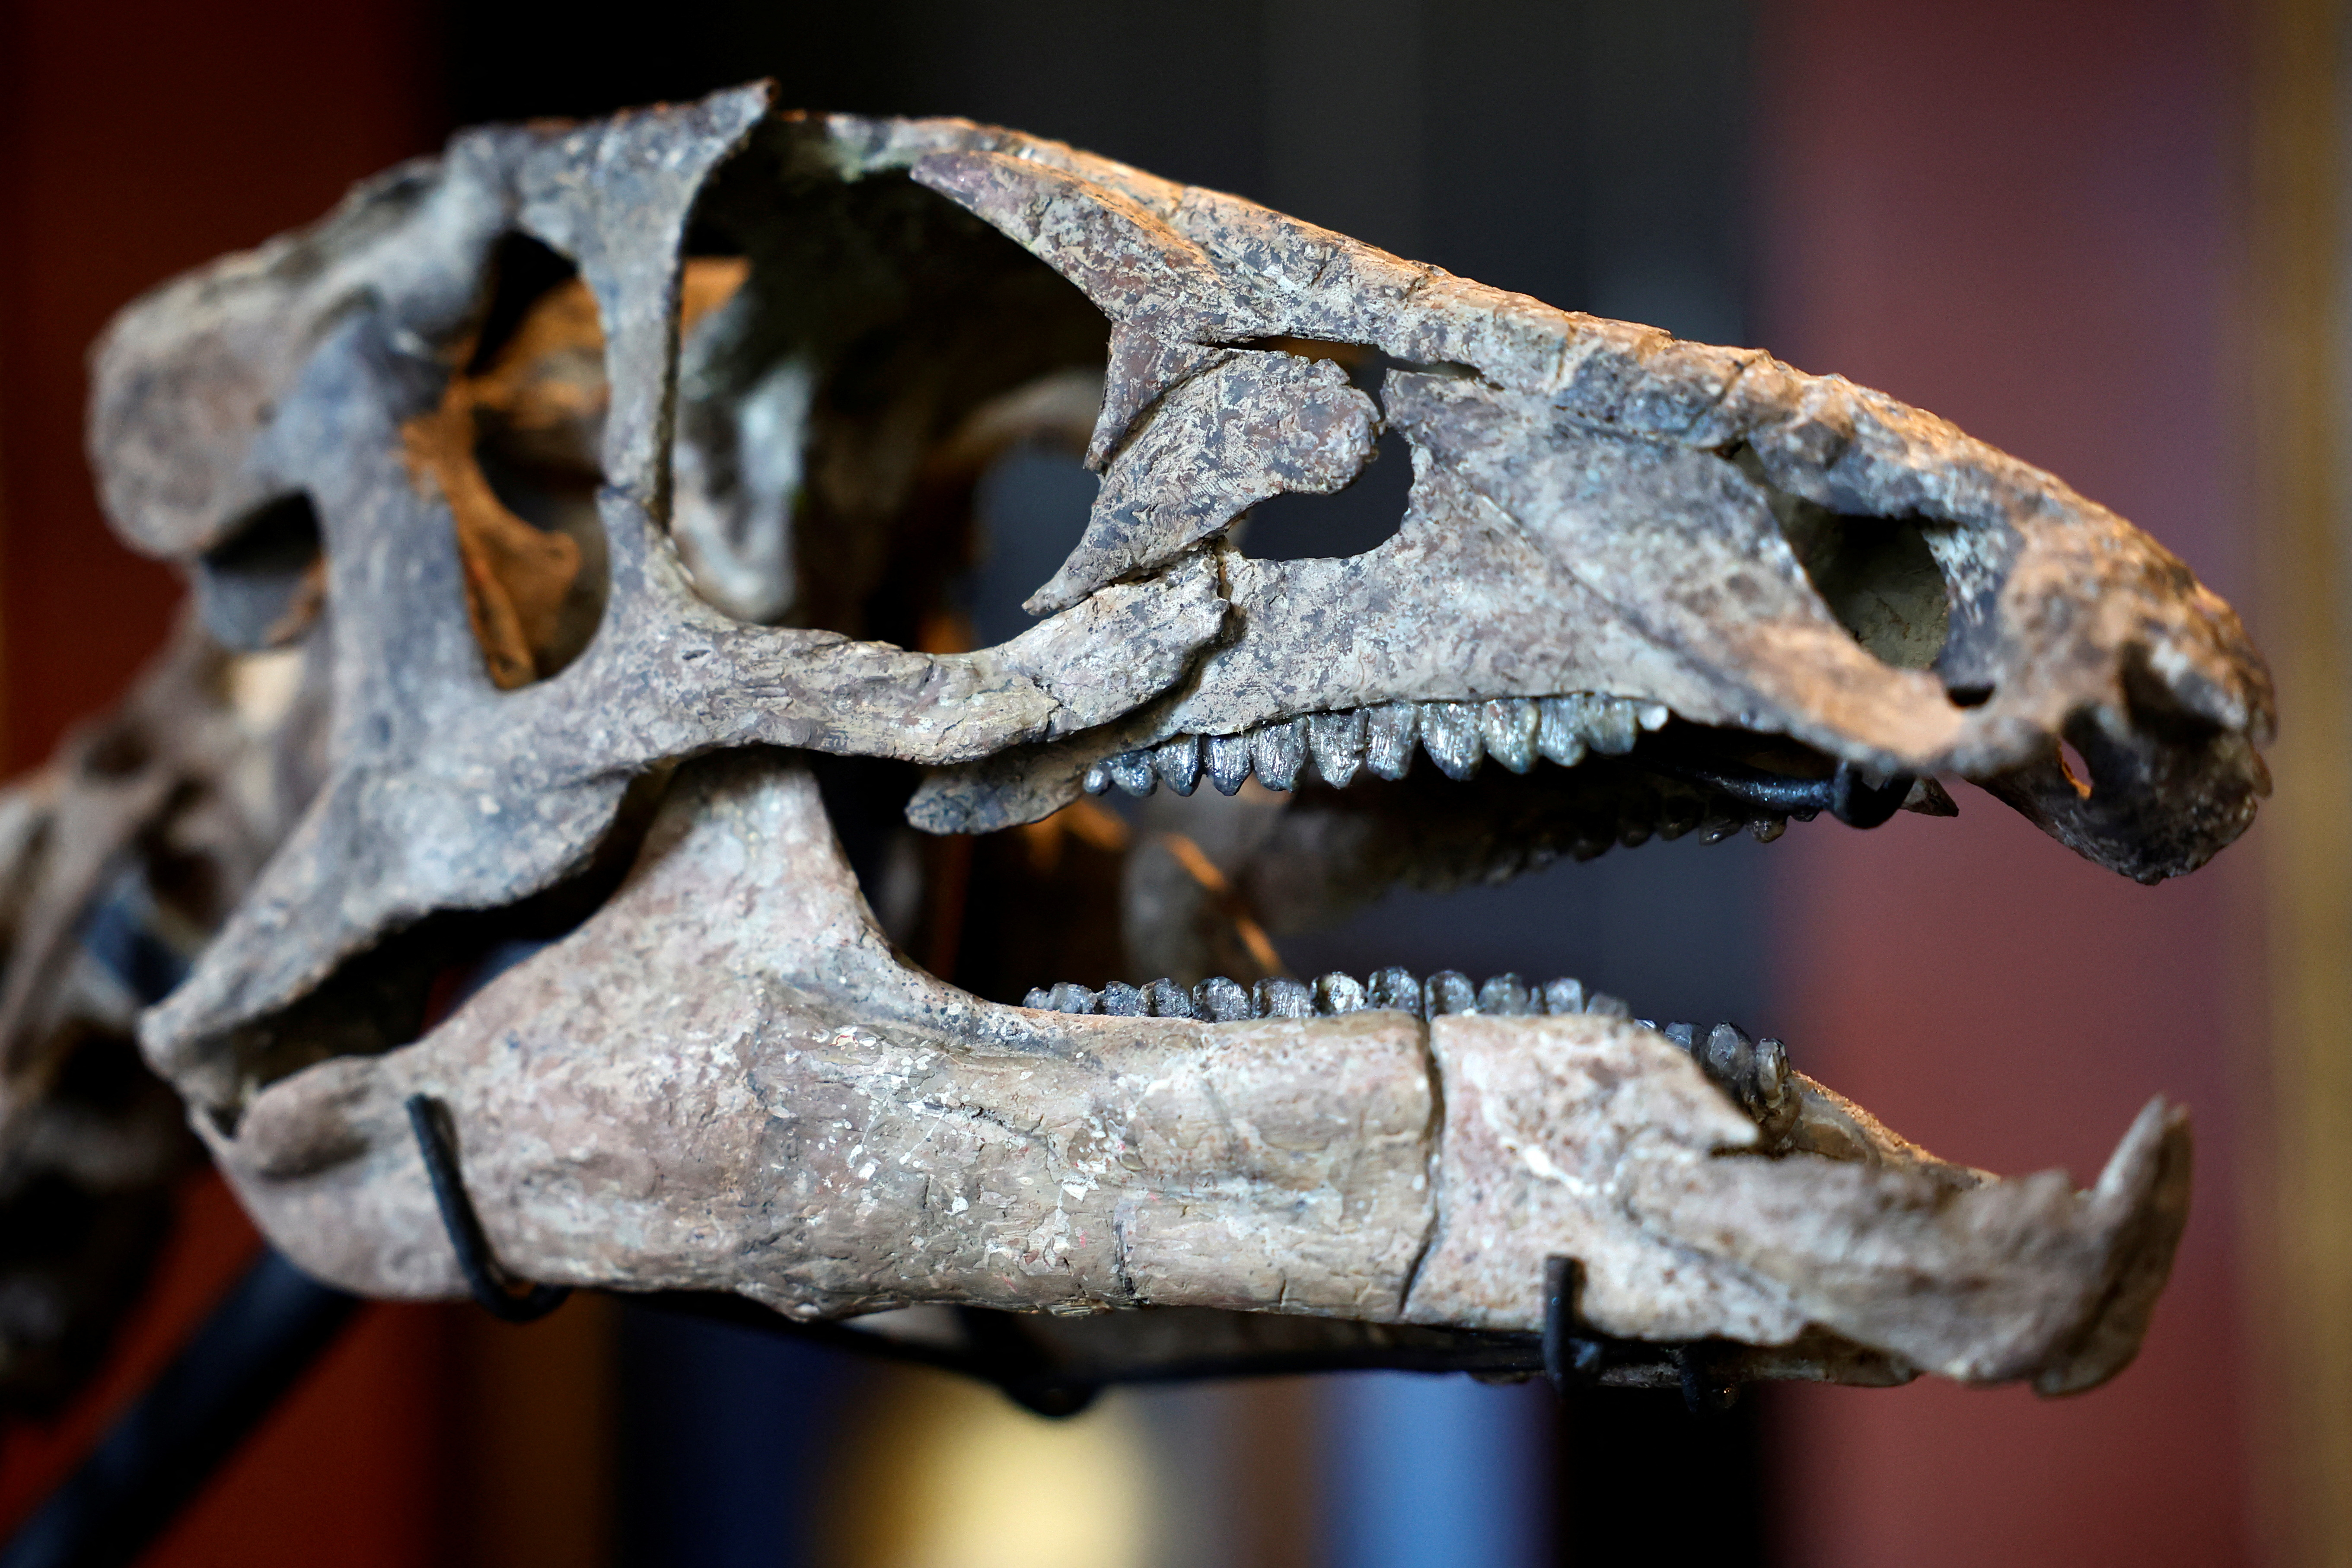 "Parece que una de las cosas que hizo especiales a los primeros dinosaurios es que evolucionaron con dietas diferentes a lo largo del Triásico, y creemos que esto pudo ser clave para su éxito evolutivo y ecológico”, dijo la especialista (REUTERS/Sarah Meyssonnier)